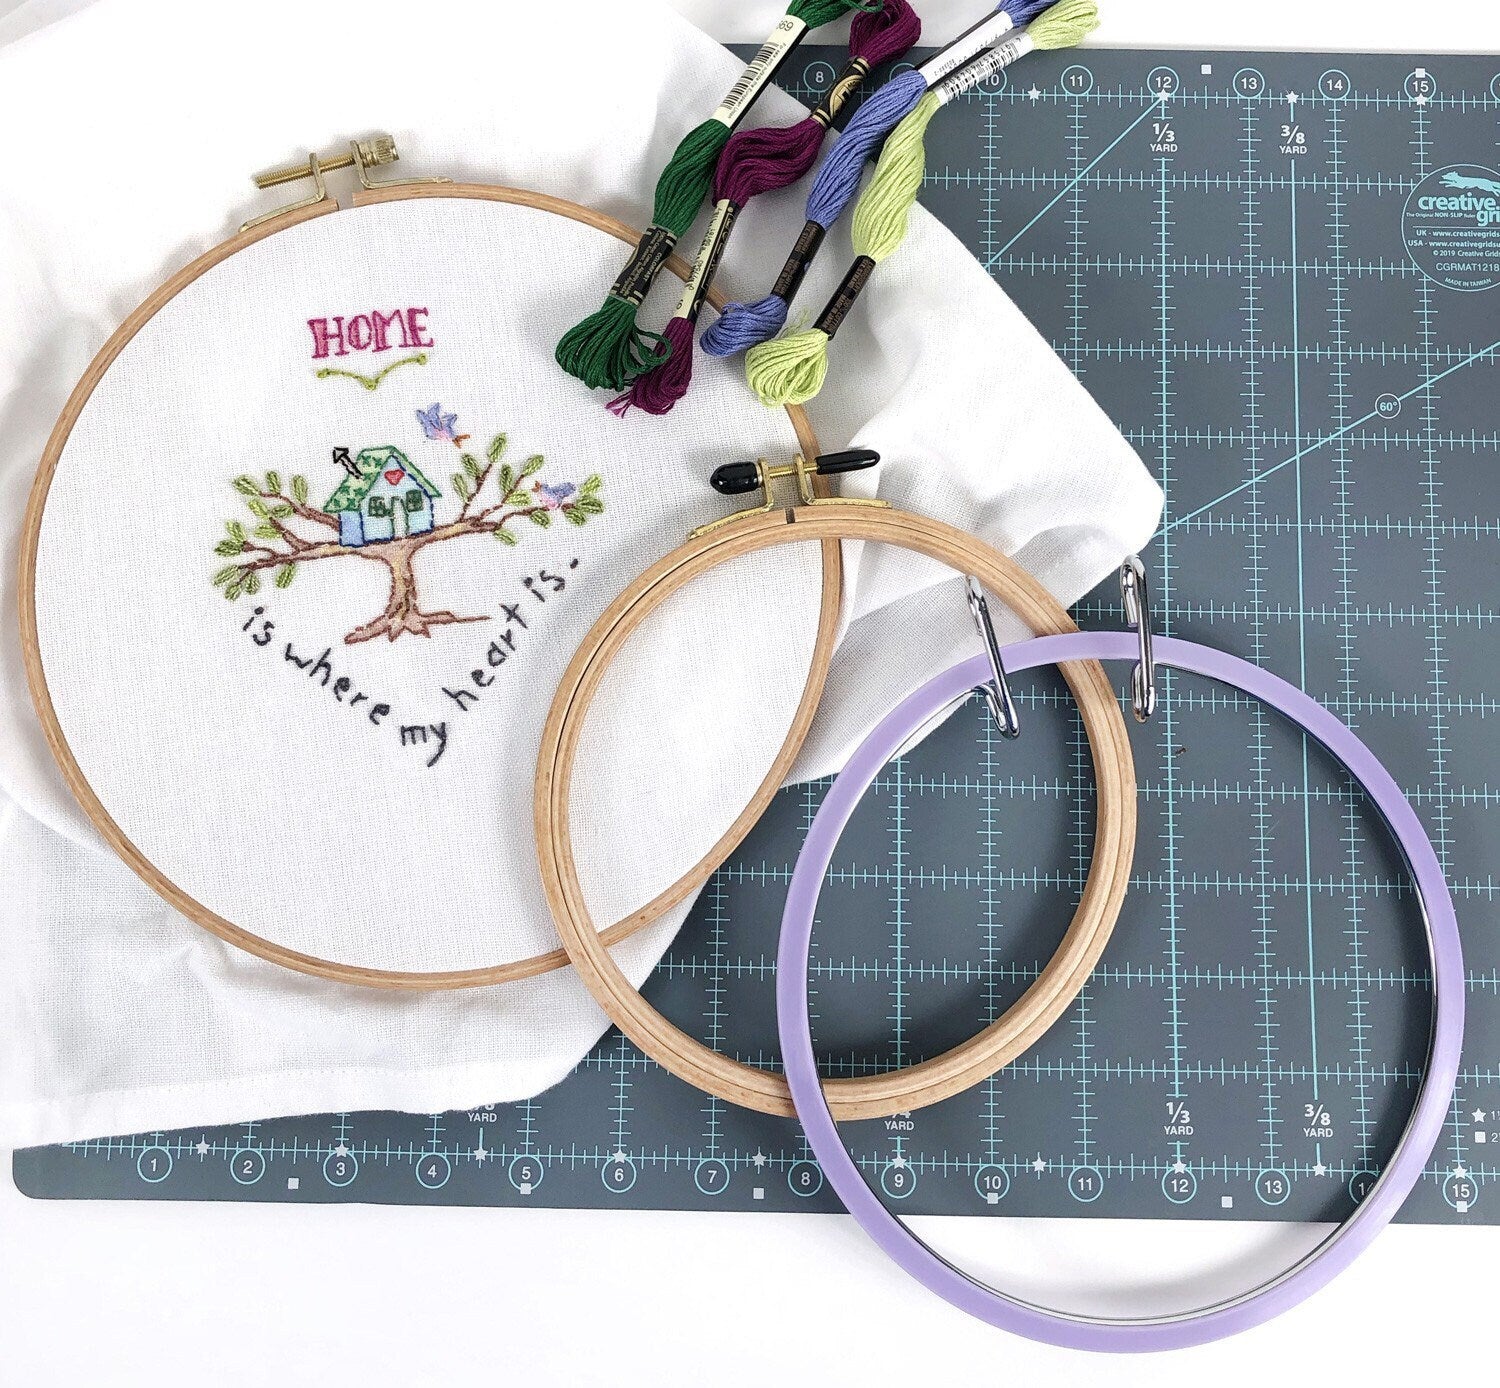 7in Spring Tension Embroidery Hoop